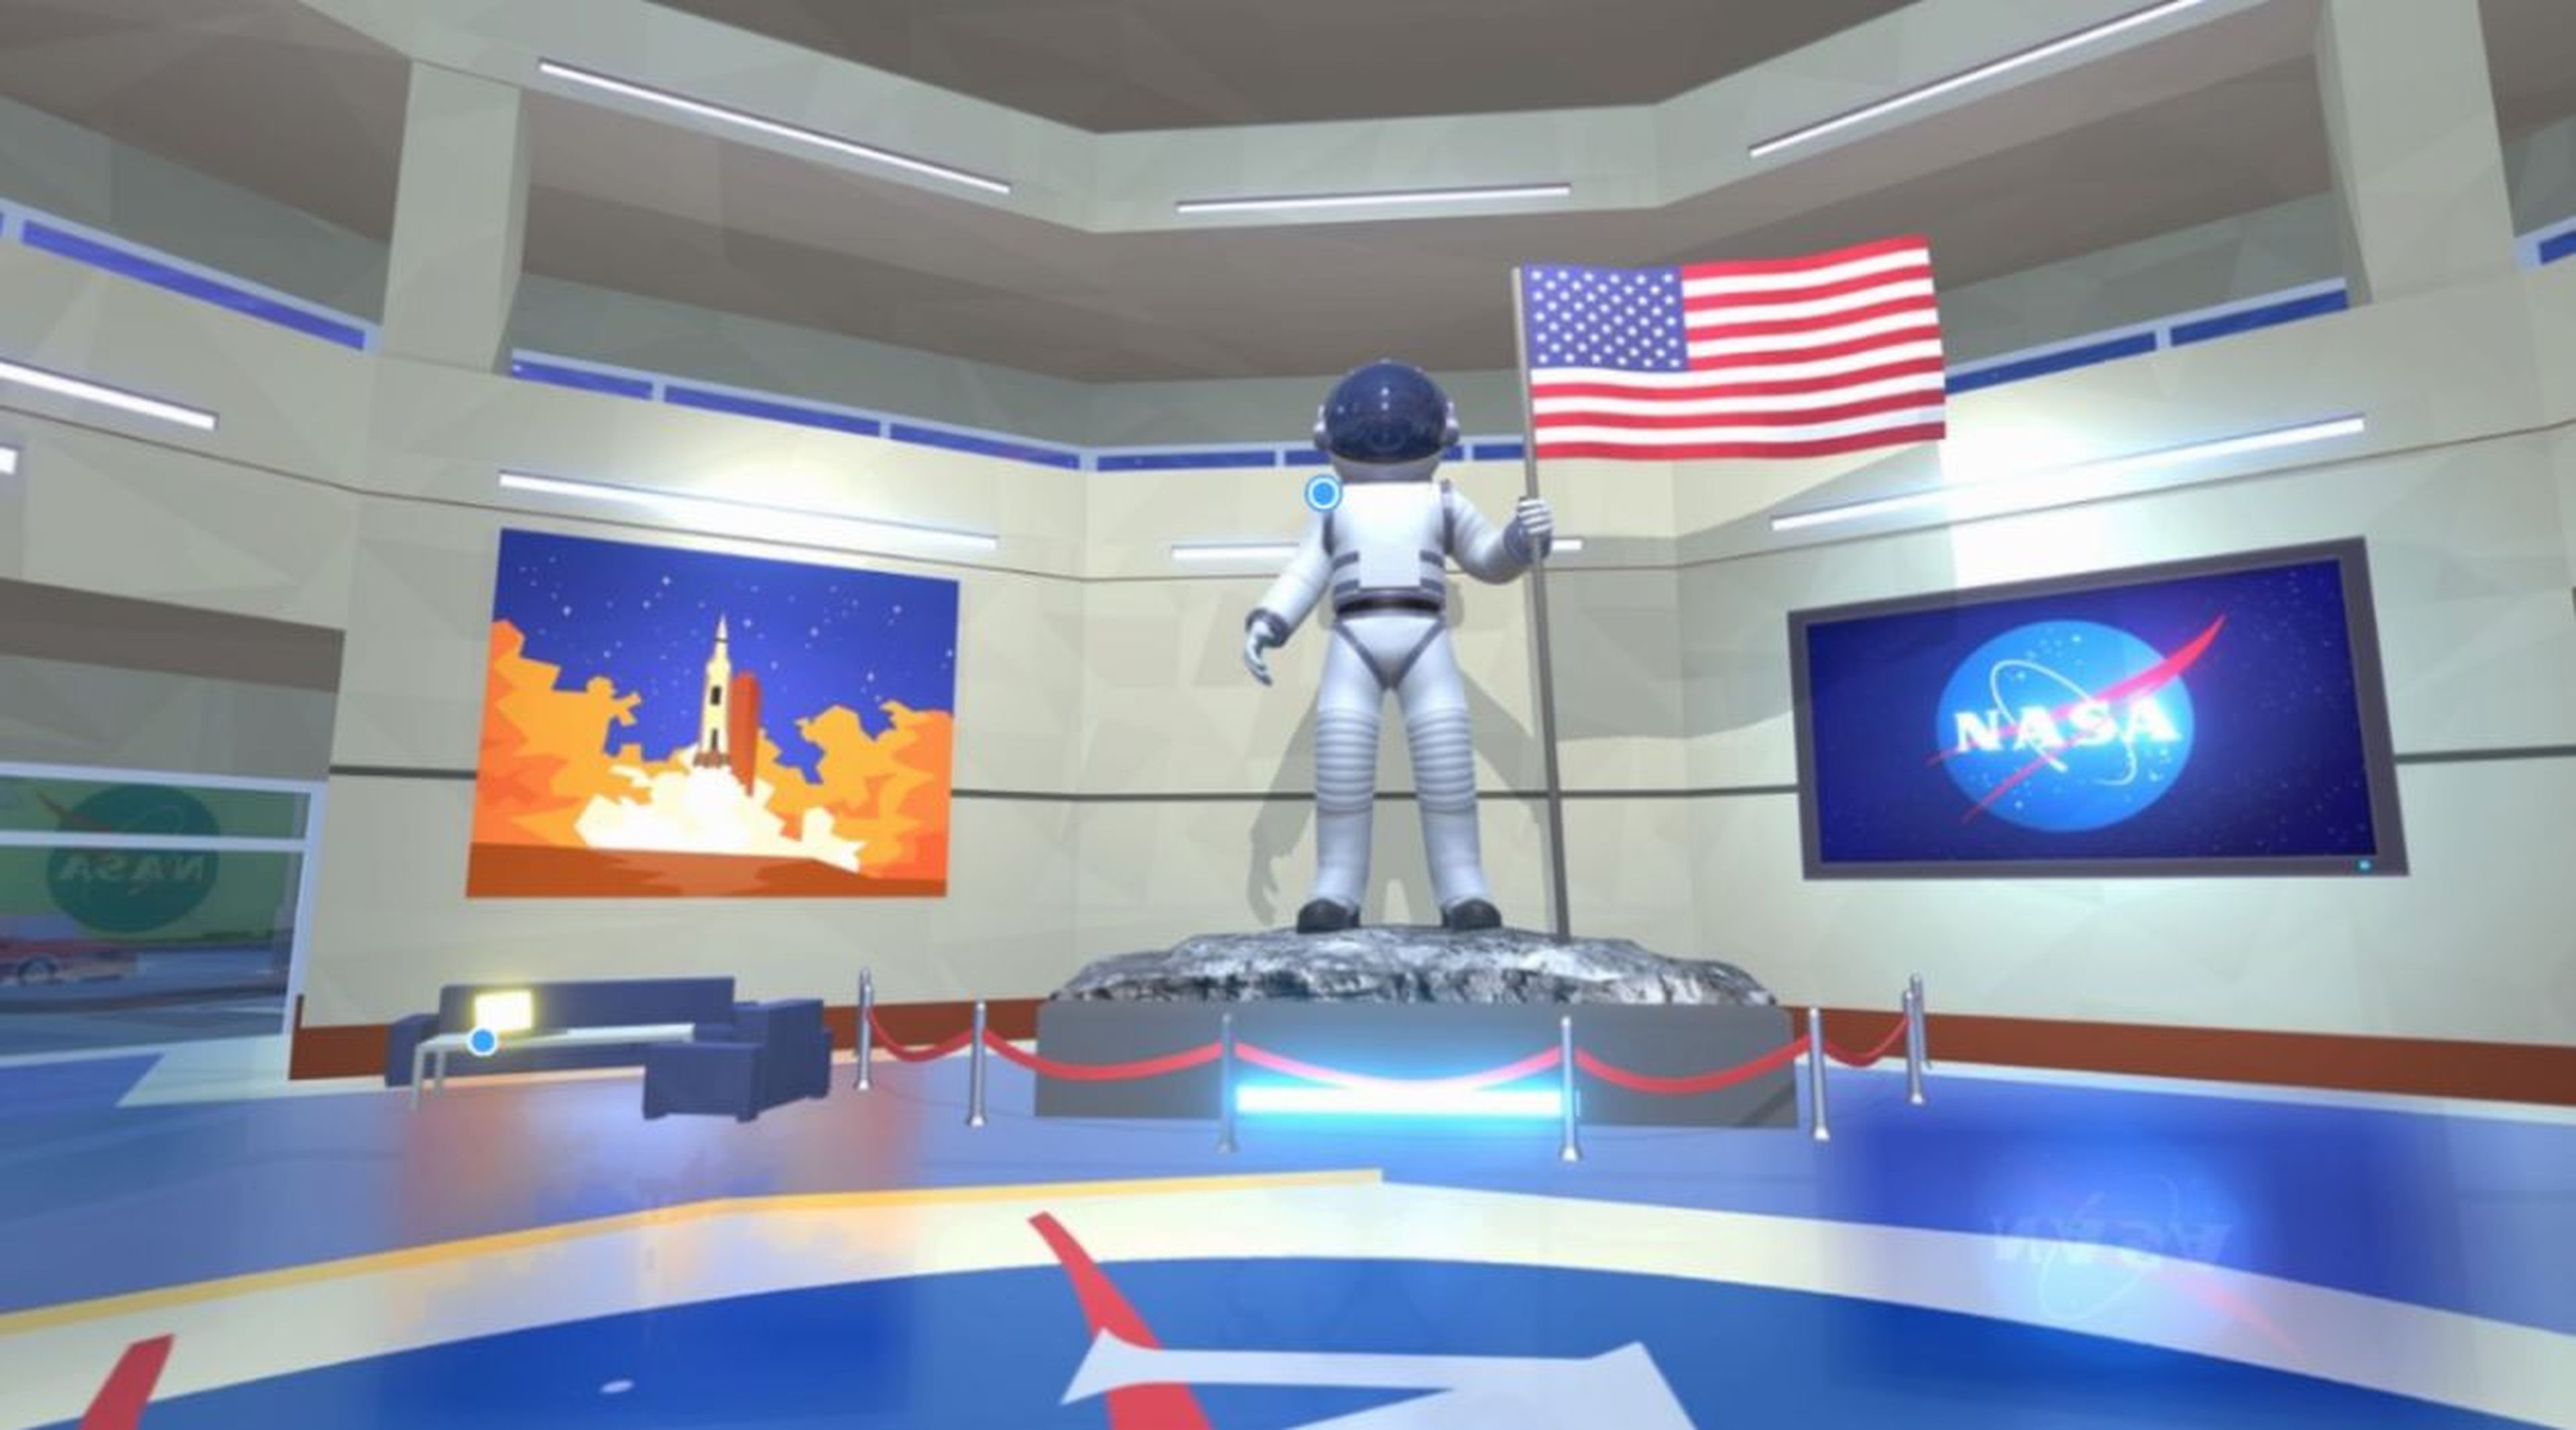 Oficinas de la NASA en el juego online